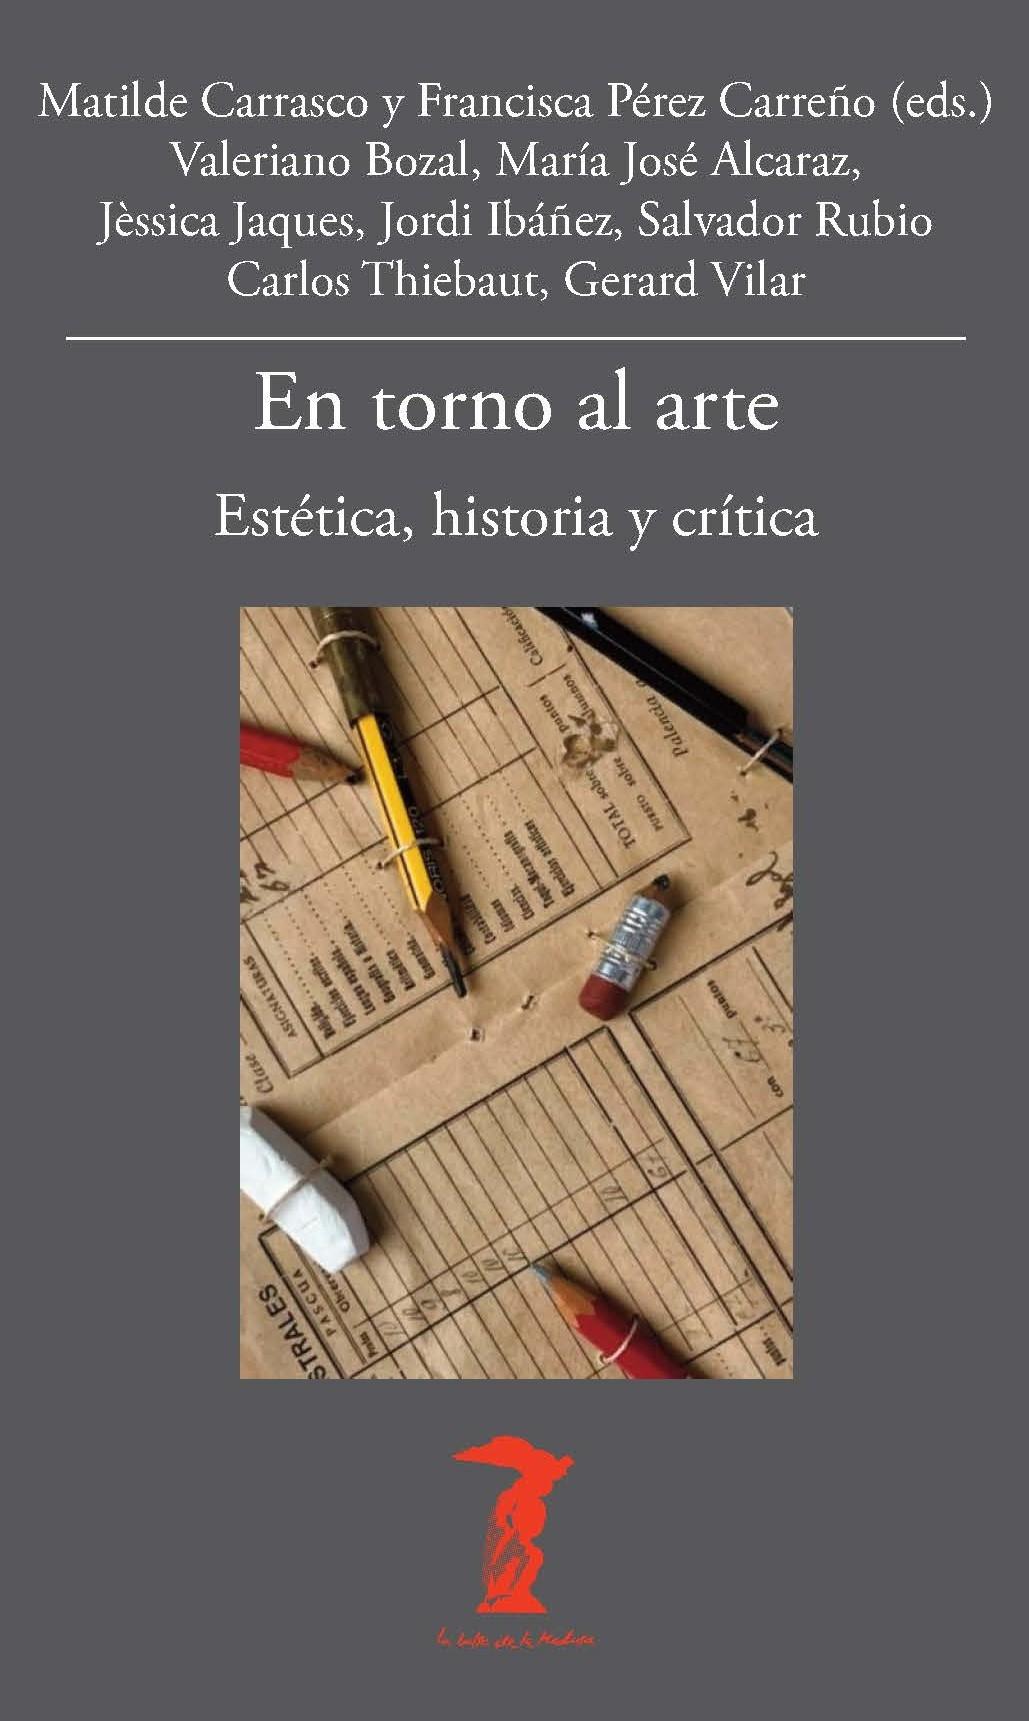 EN TORNO AL ARTE "ESTÉTICA, HISTORIA Y CRÍTICA"